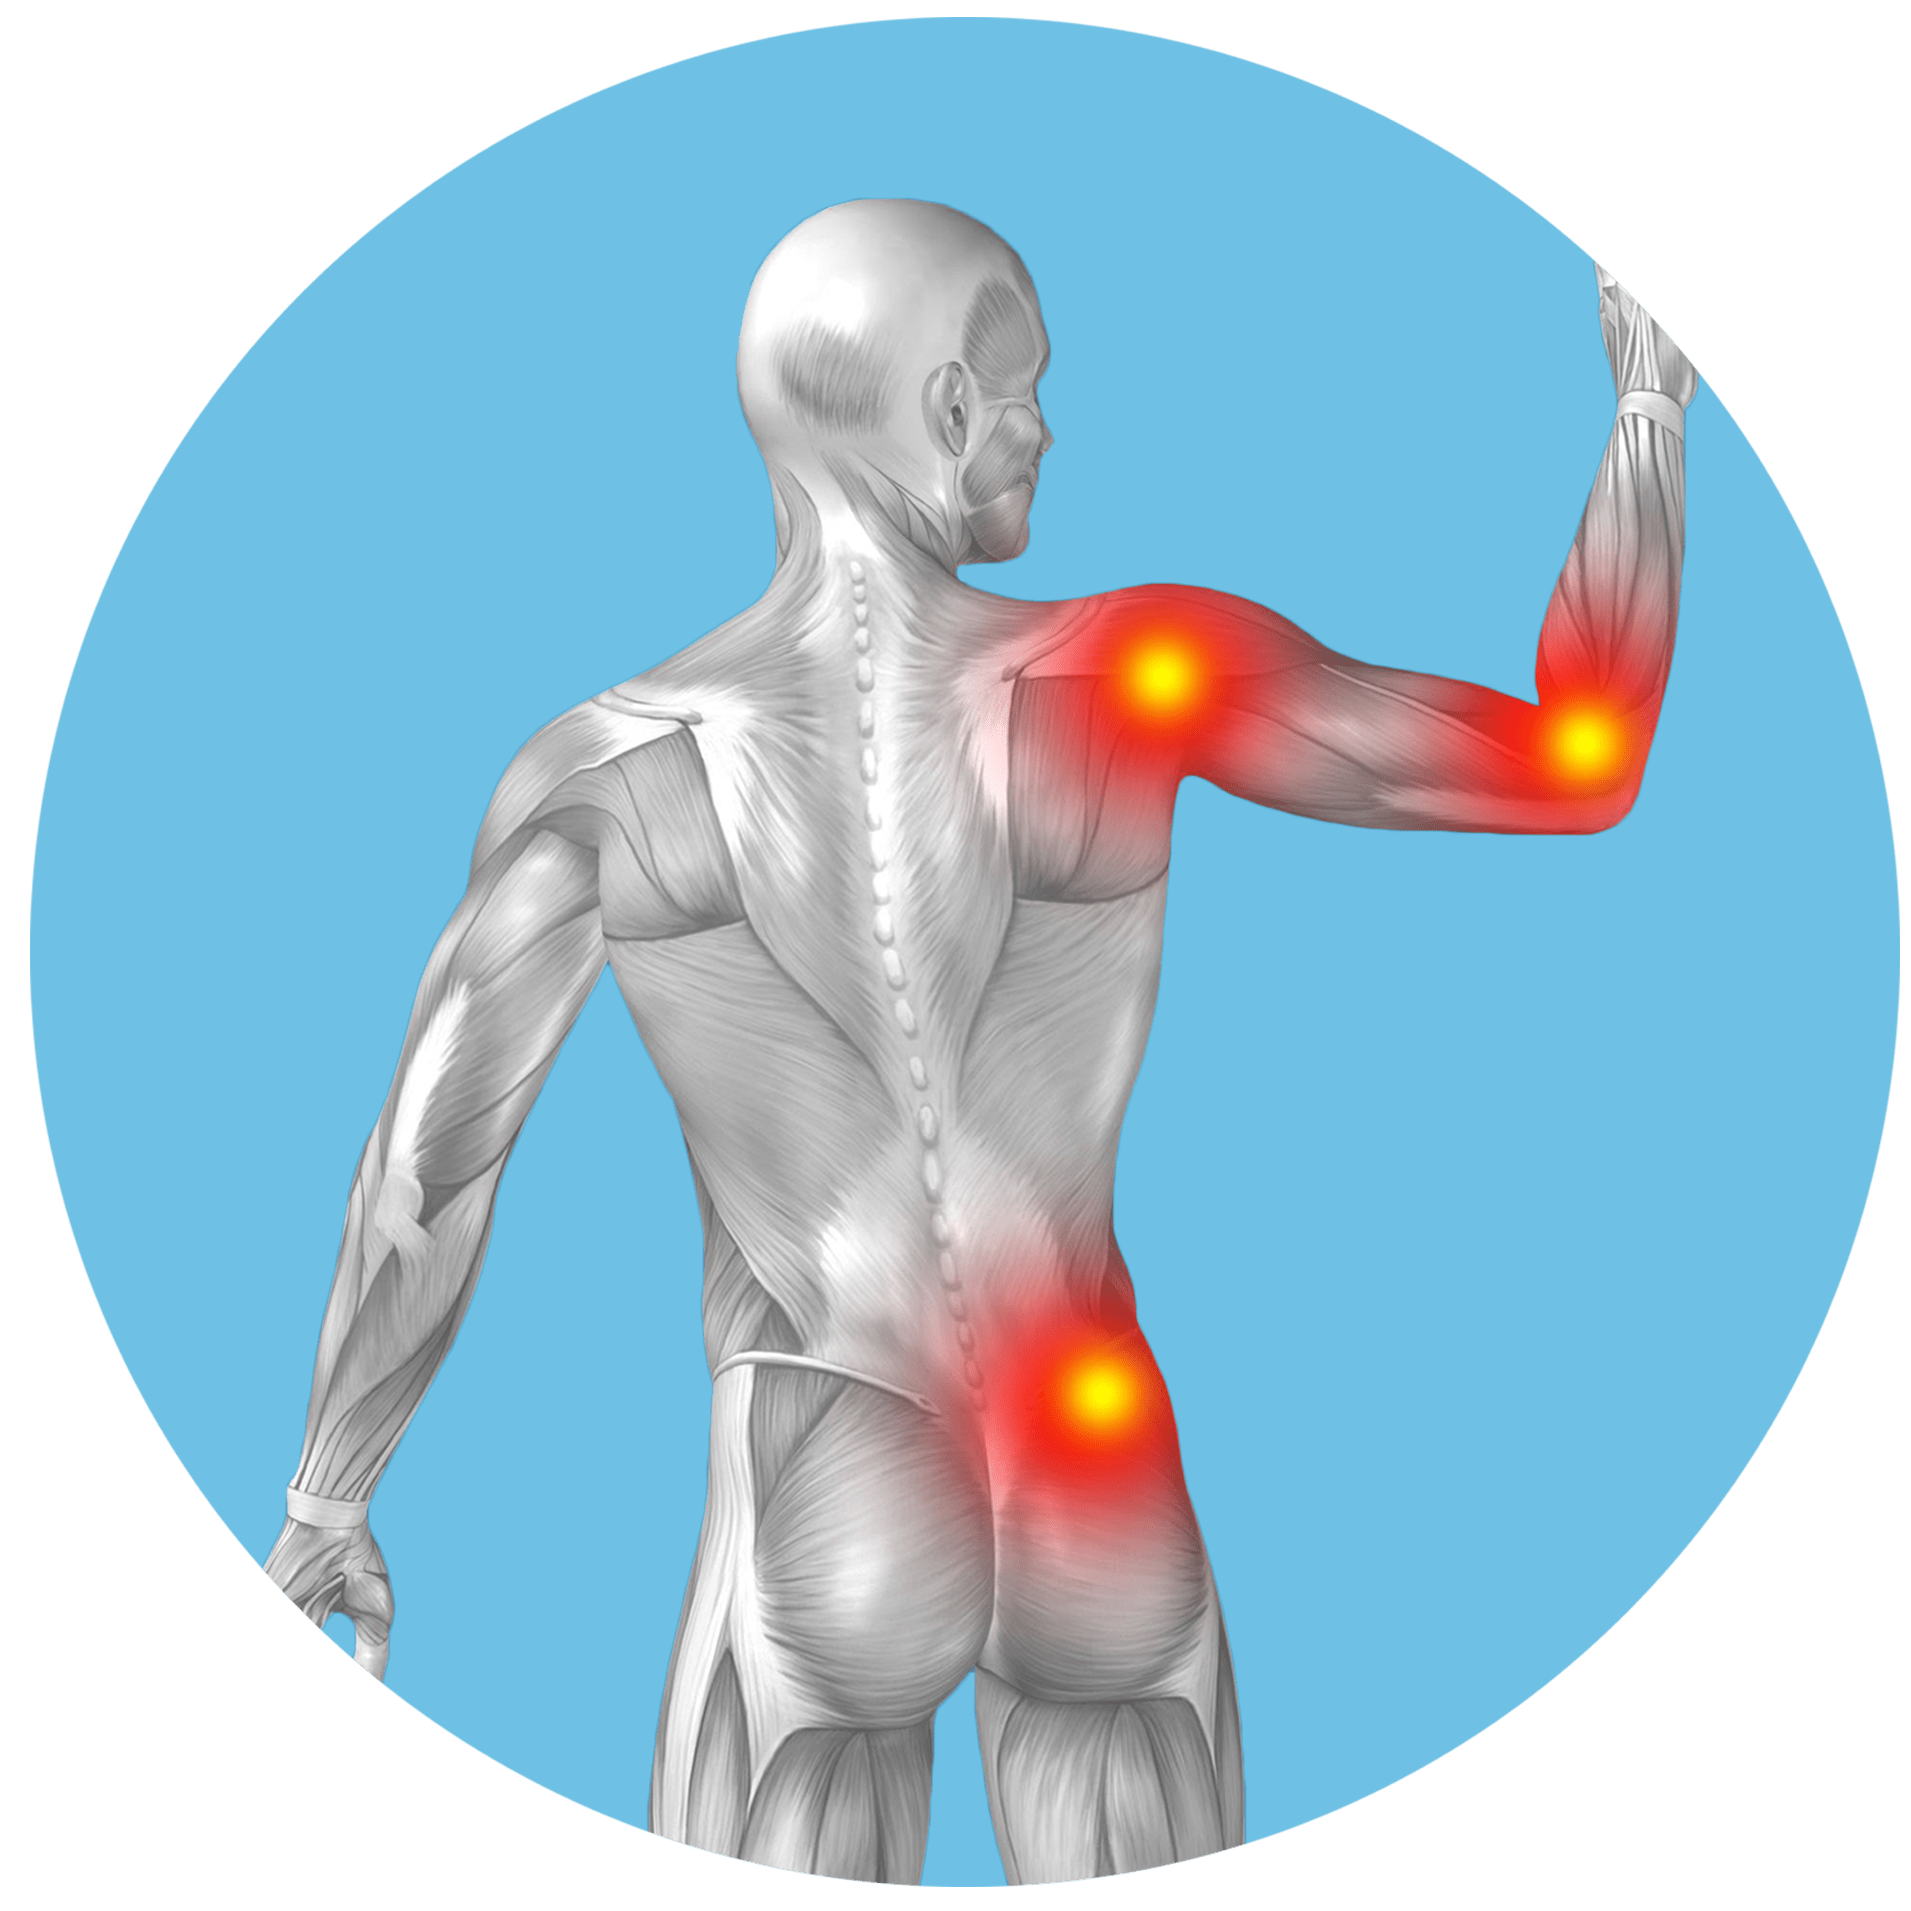 Ilustrace lidského těla zezadu s červeně zvýrazněnými oblastmi ukazujícími místa bolesti v rameni, dolní části zad a lokti